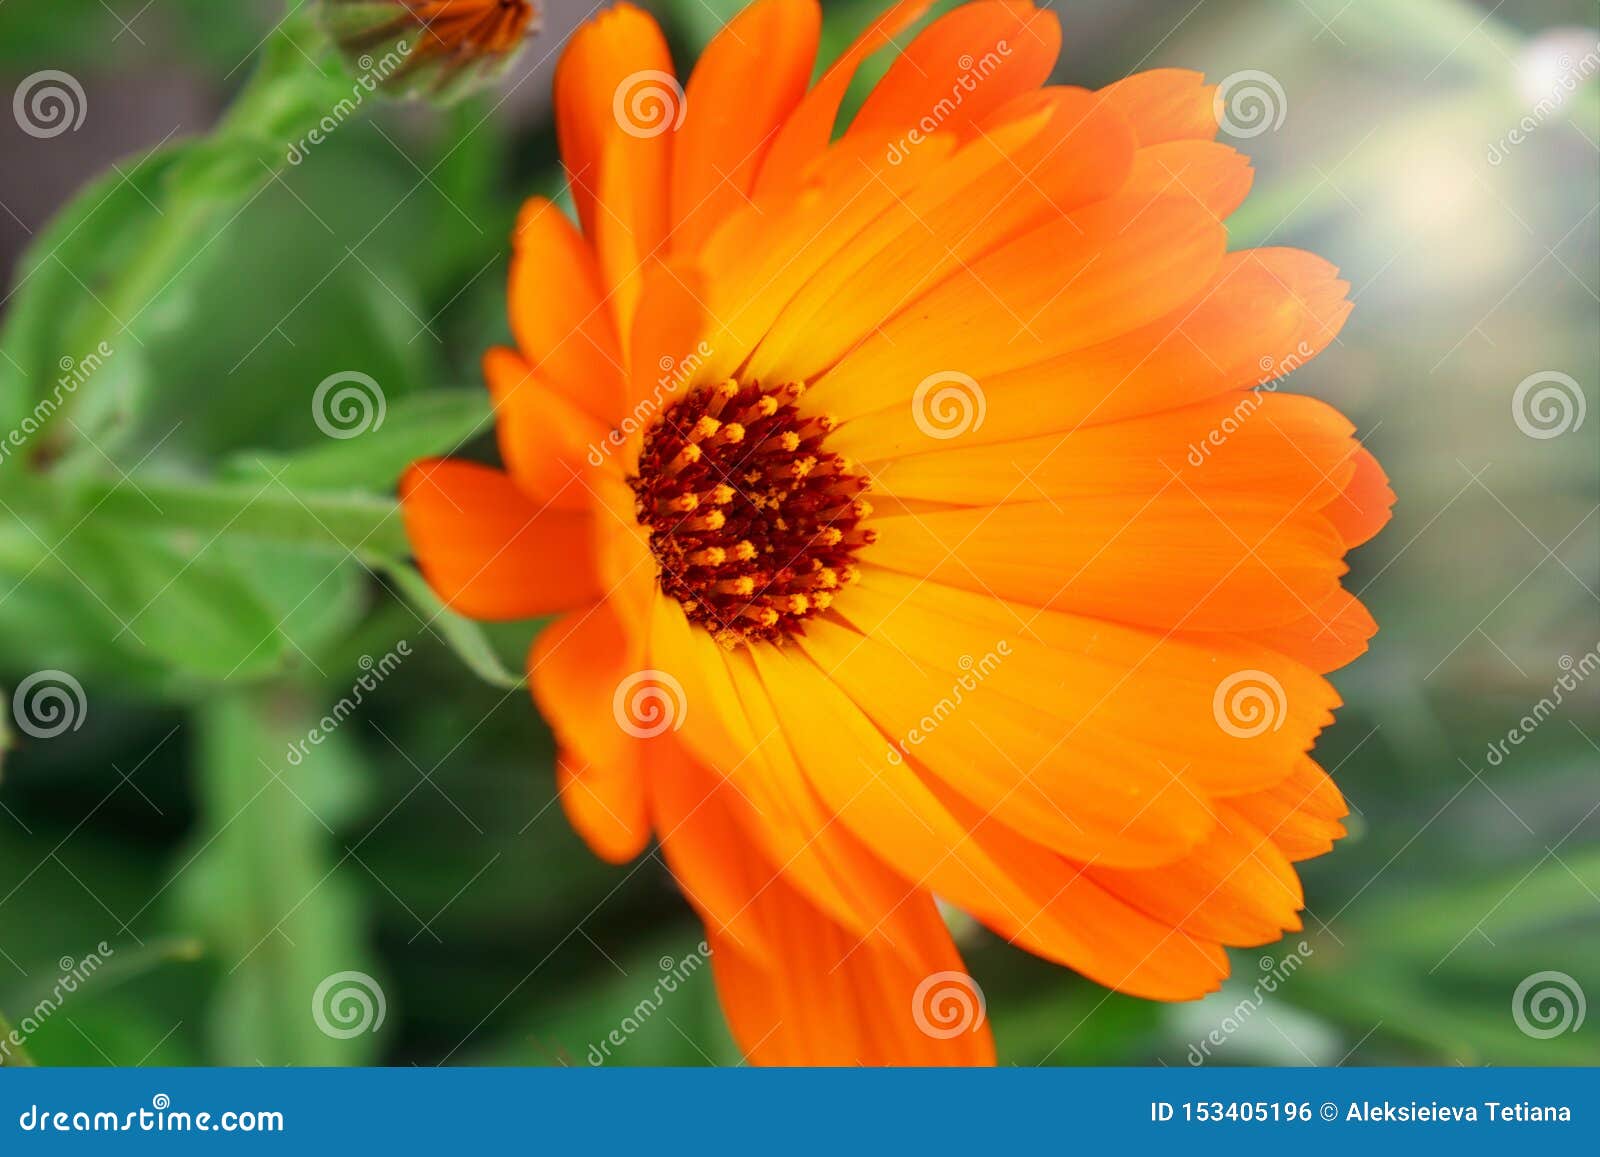 Orange Calendulablumen Neuer organischer Calendularingelblumen-Blumenhintergrund Hintergrund mit Calendula